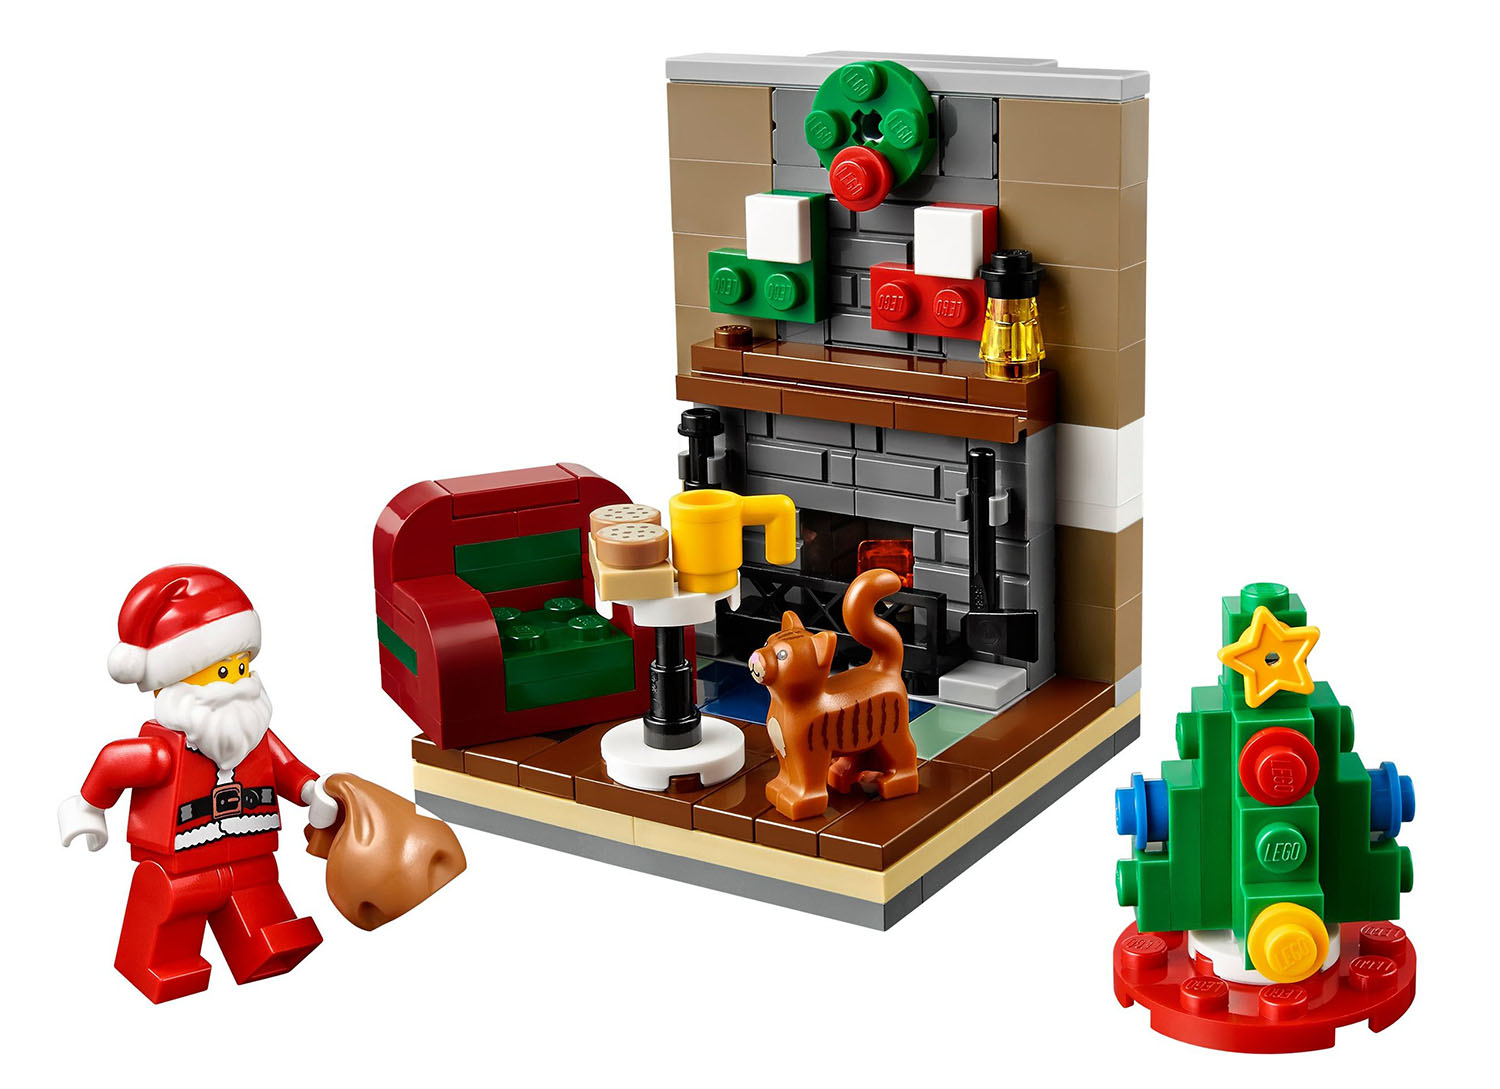 LEGO Saisonnier 40125 pas cher - La visite du Père Noël